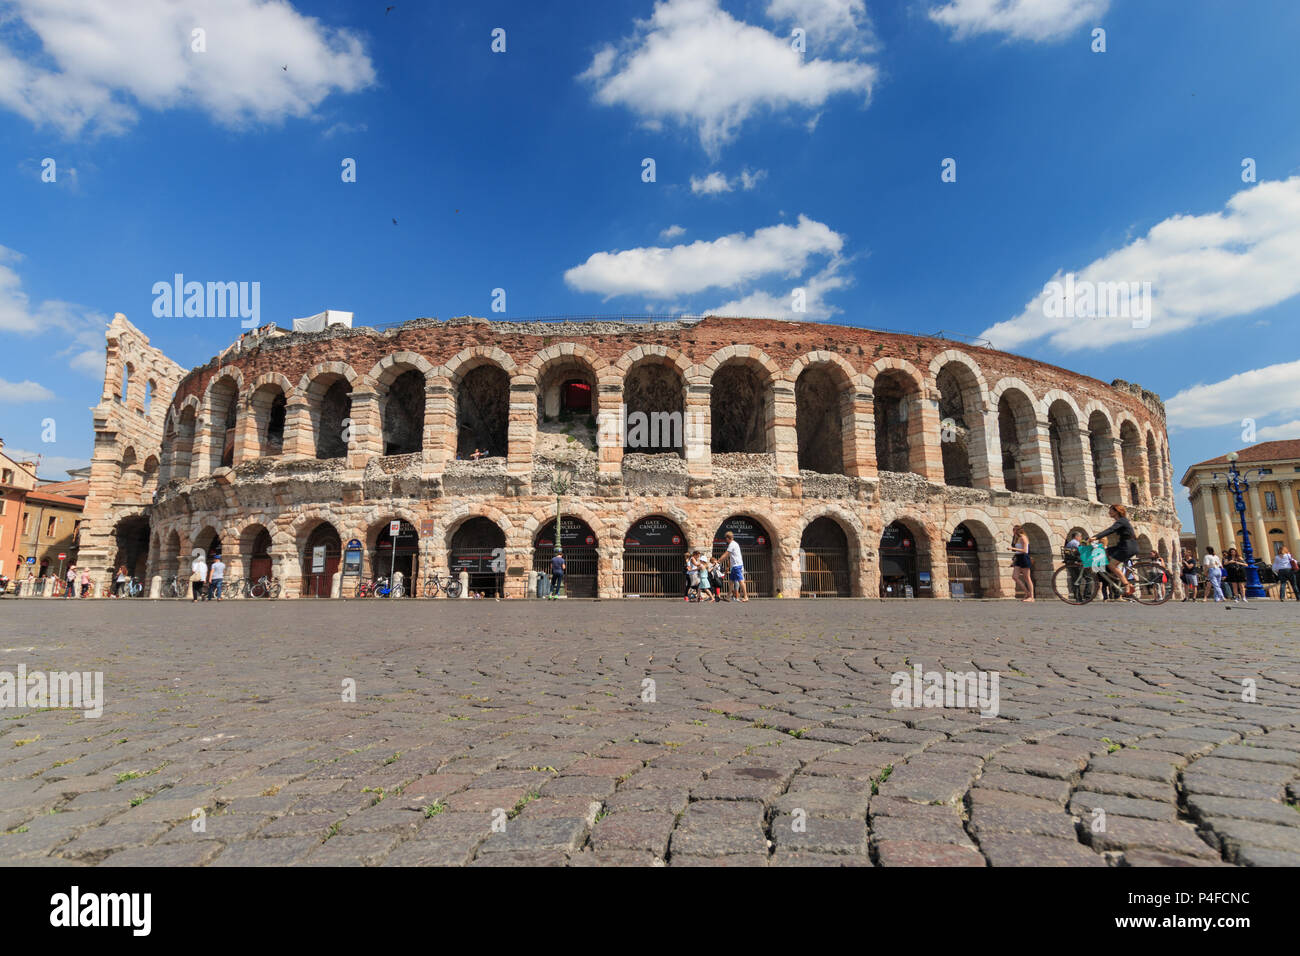 Verona, Italia - 26 Maggio 2017: al di fuori della vista di Arena di Verona da Piazza Bra, un antico anfiteatro romano (Arena di Verona) Foto Stock